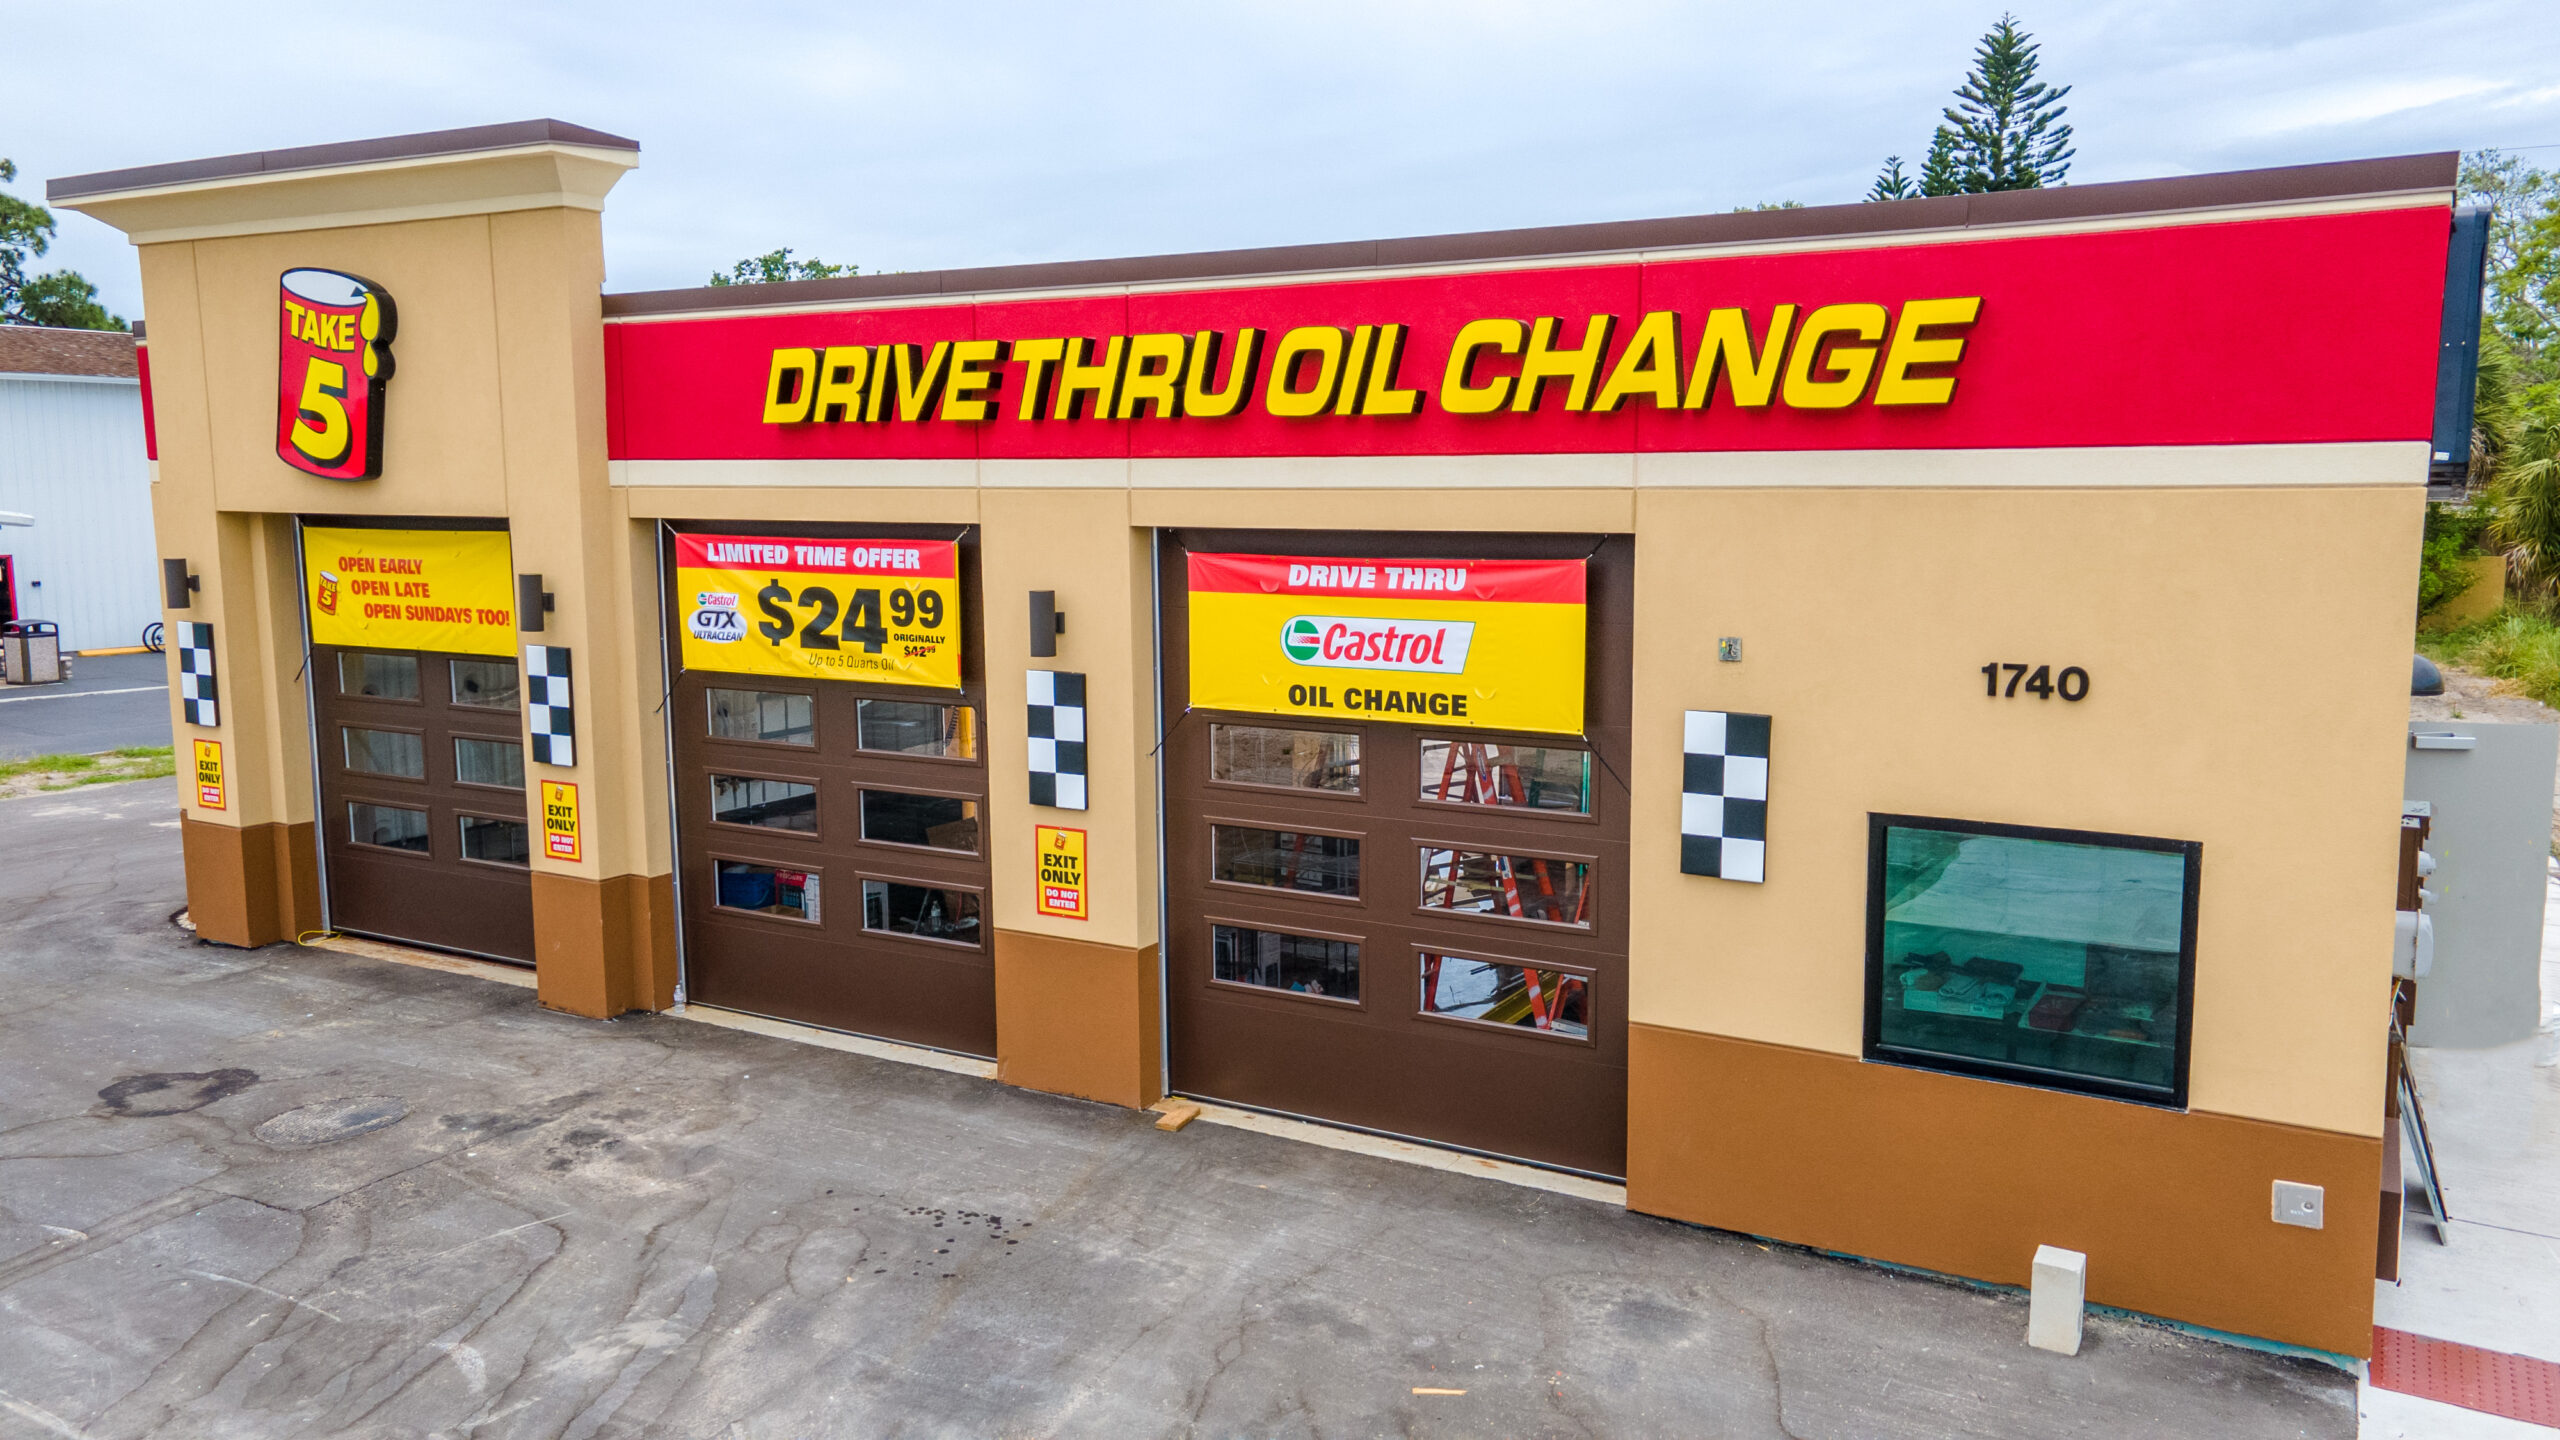 take five oil change discounts